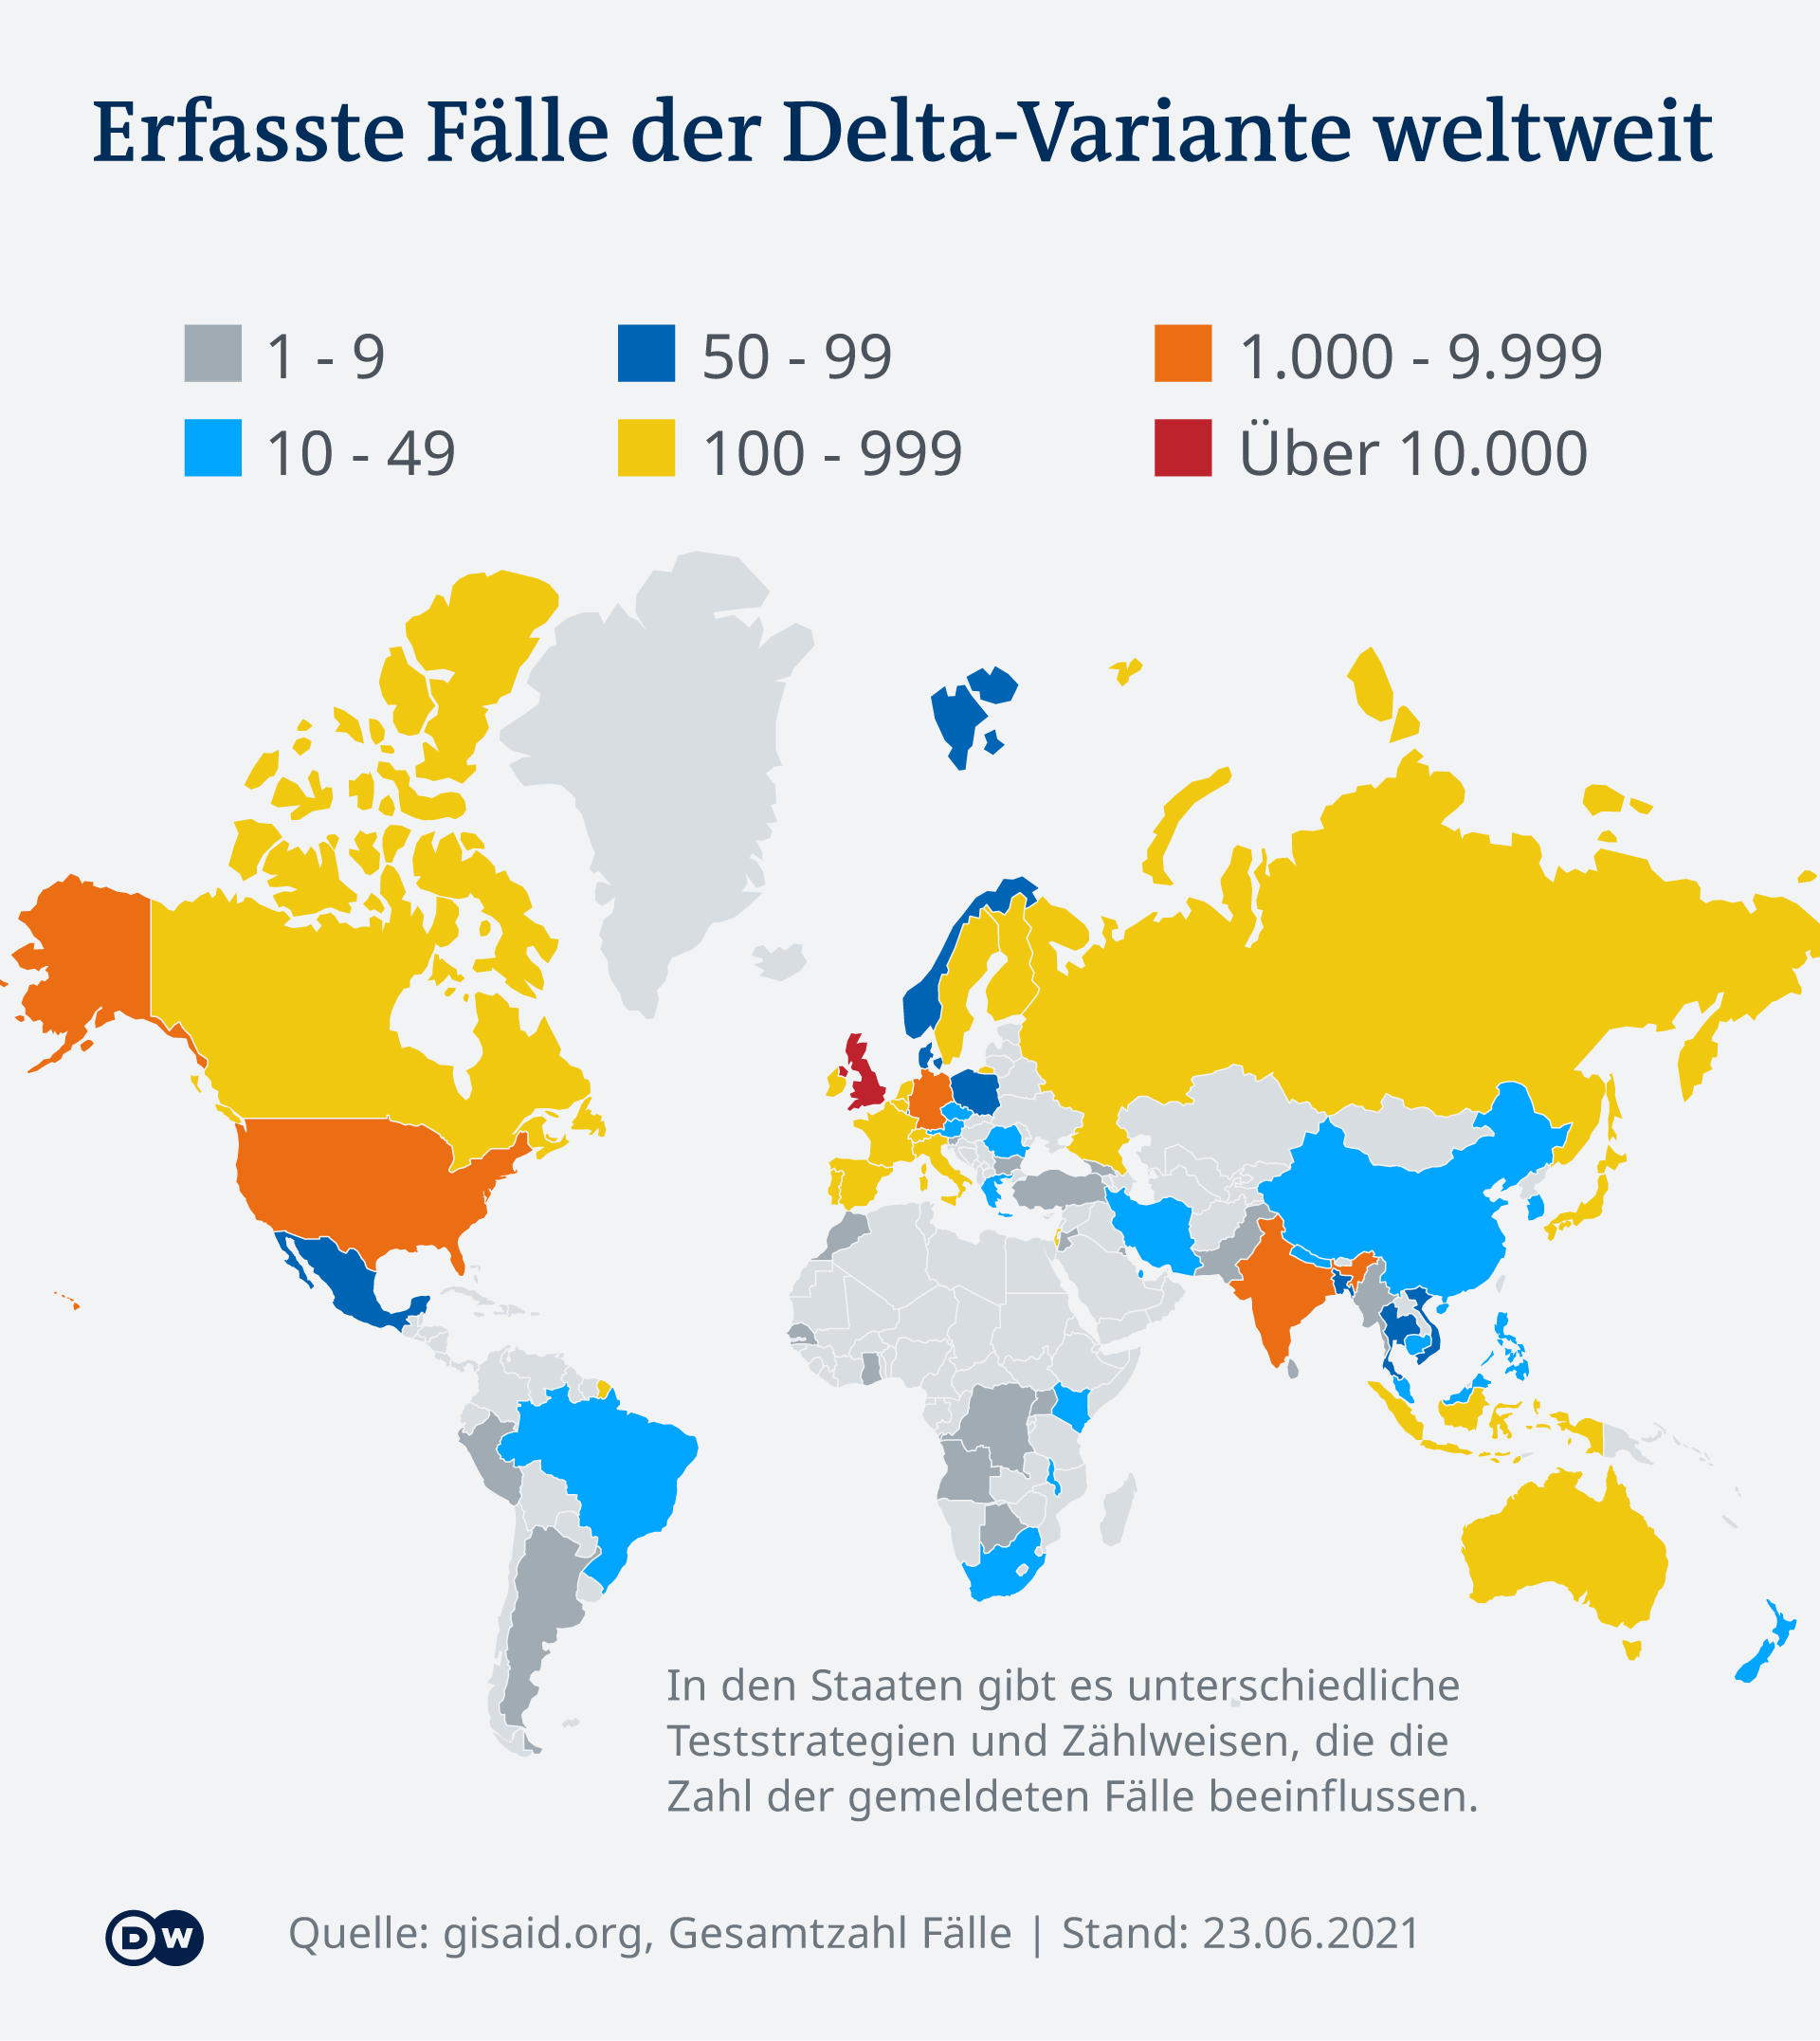 Infografik Erfasste Fälle der Delta-Variante weltweit DE